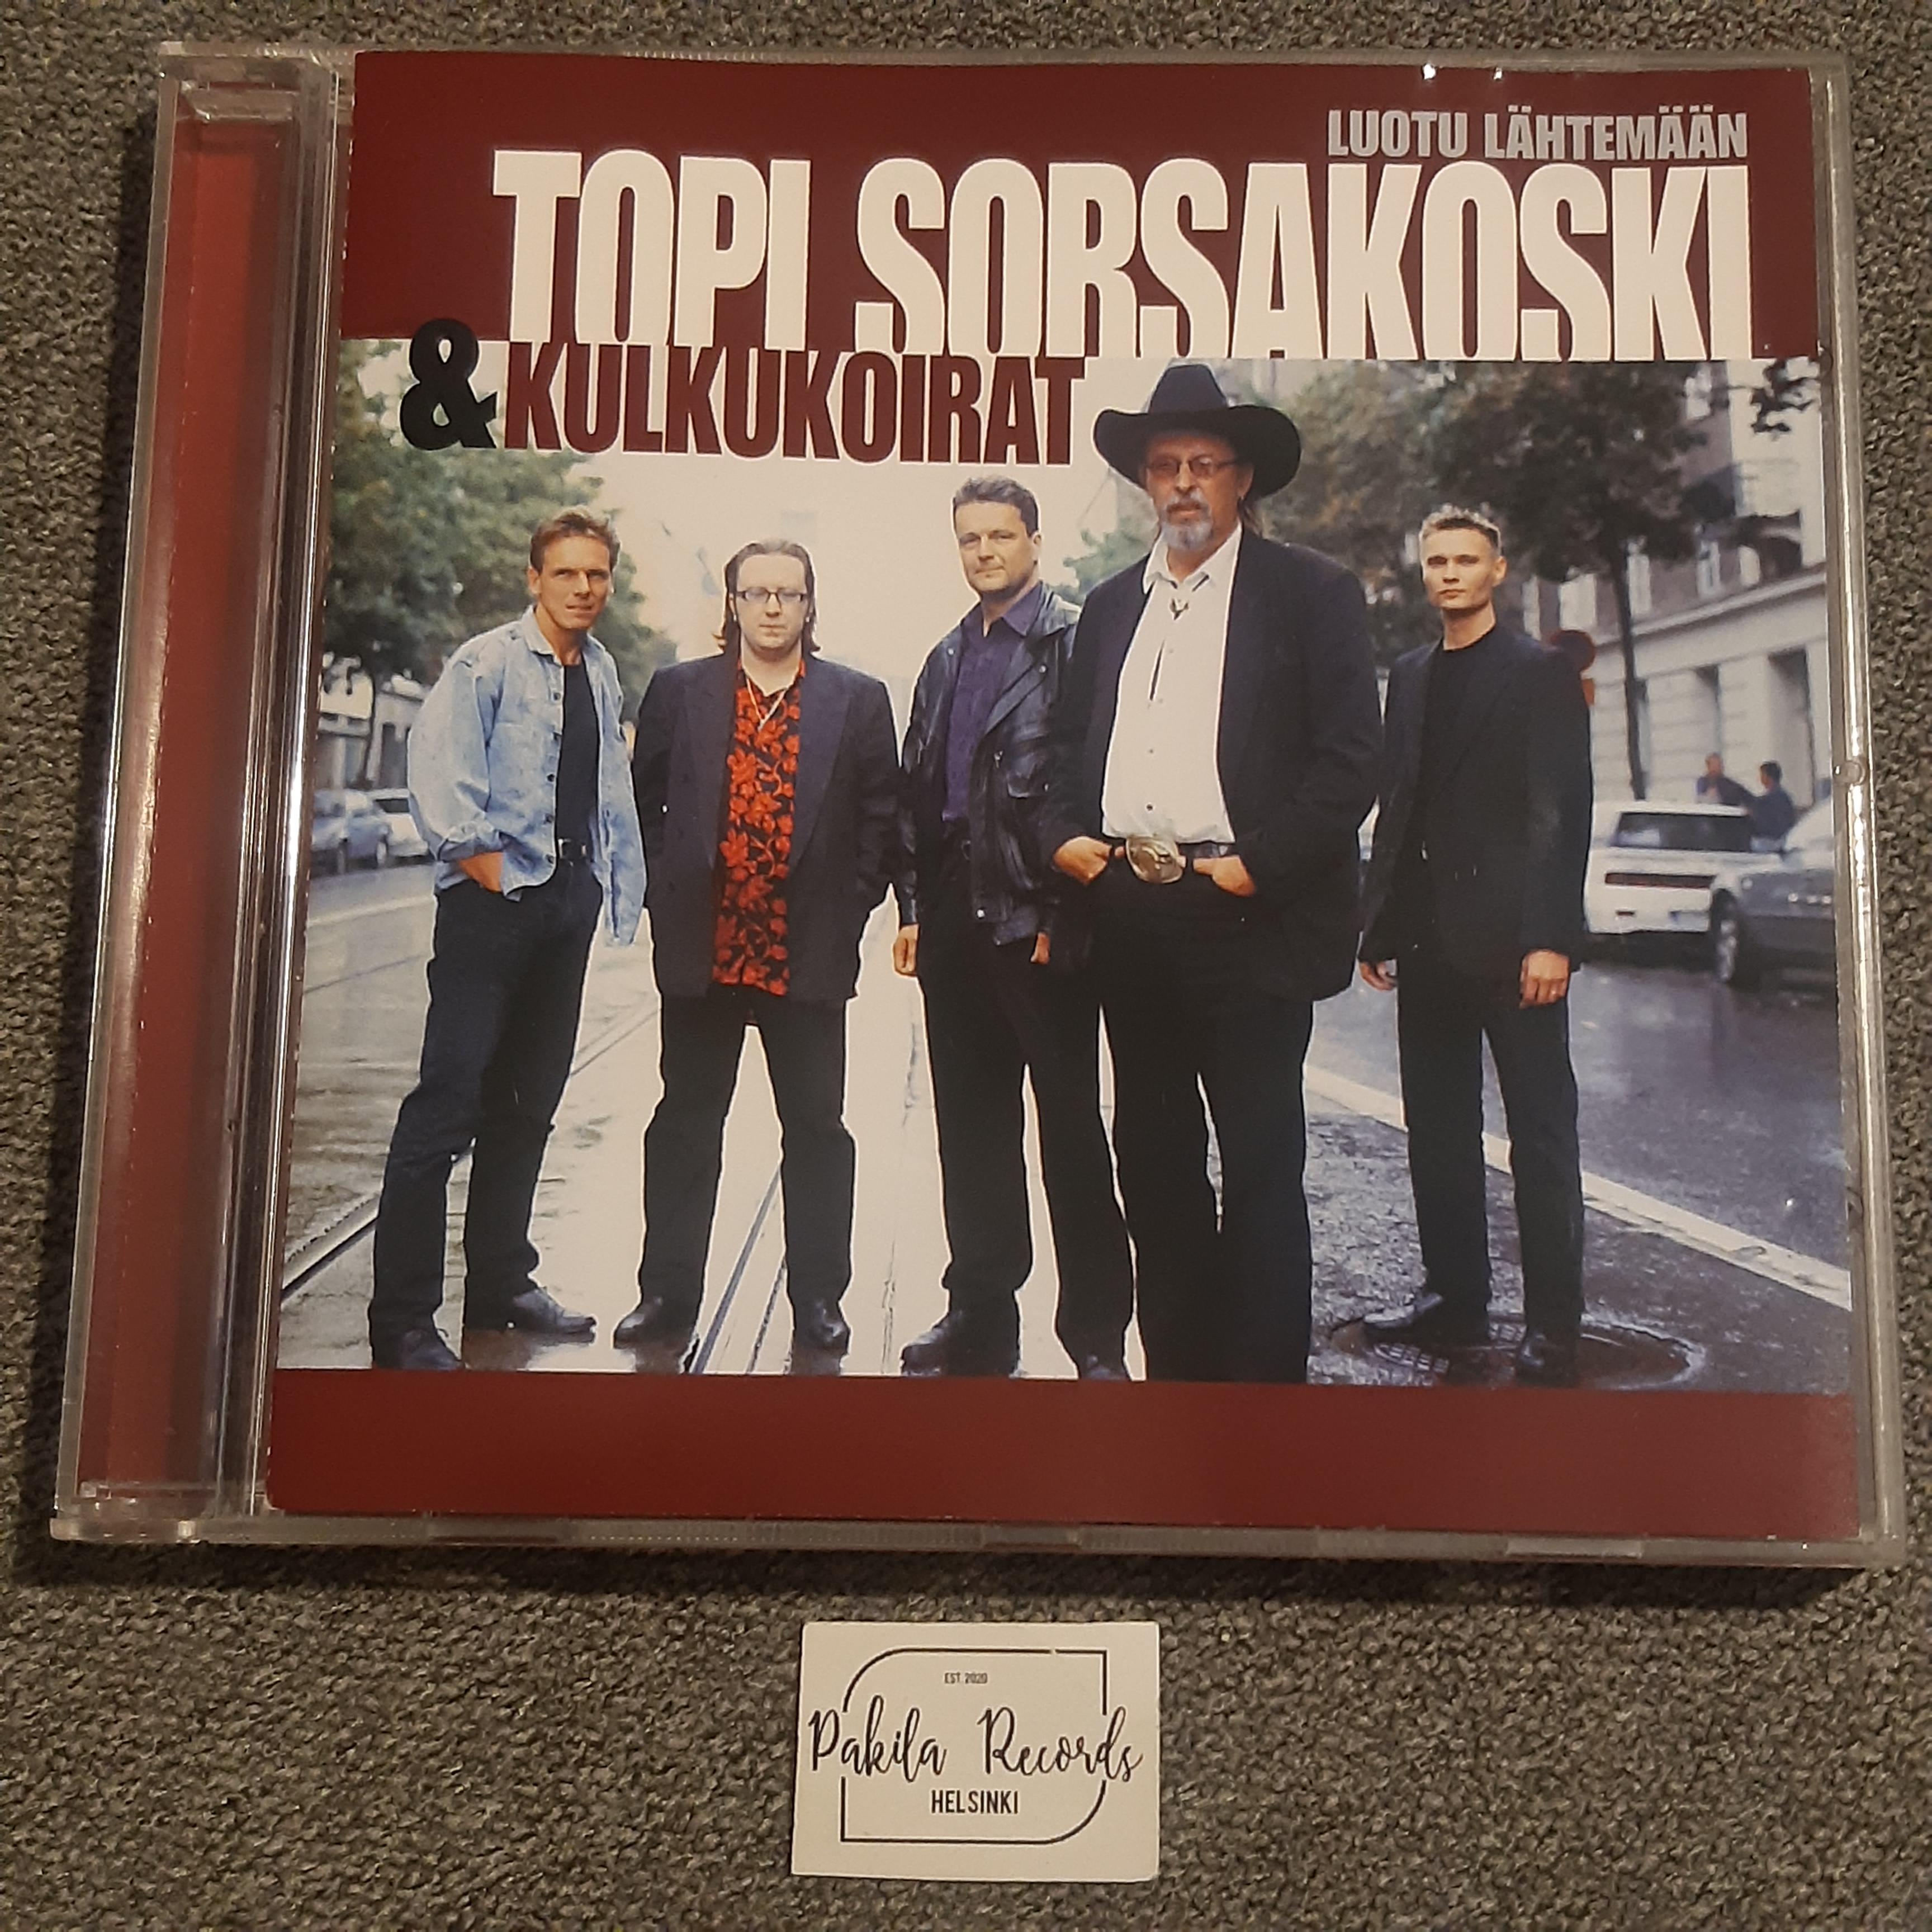 Topi Sorsakoski & Kulkukoirat - Luotu lähtemään - CD (käytetty)